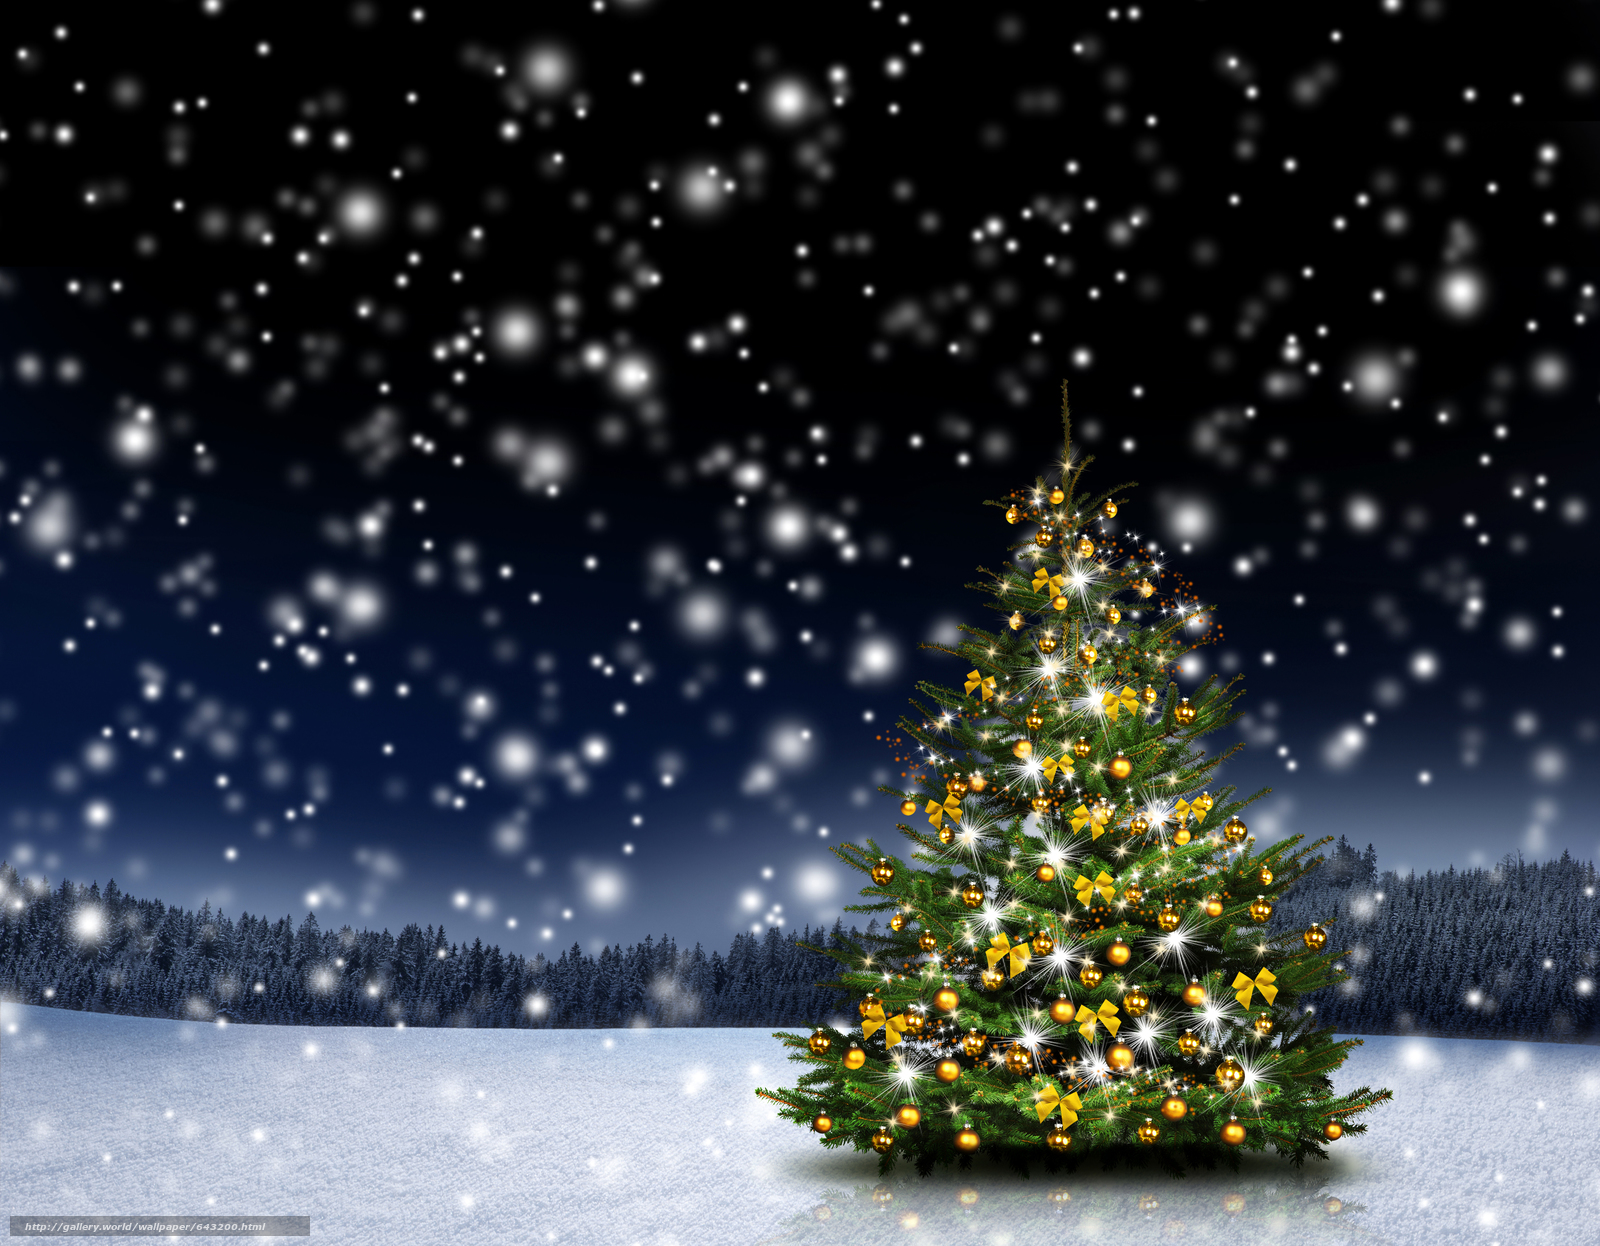 Free Download Download Hintergrund Weihnachtsbaum Schnee Christmas Wallpaper 1600x1246 For Your Desktop Mobile Tablet Explore 50 Weihnachtsbaum Wallpaper Weihnachtsbaum Wallpaper